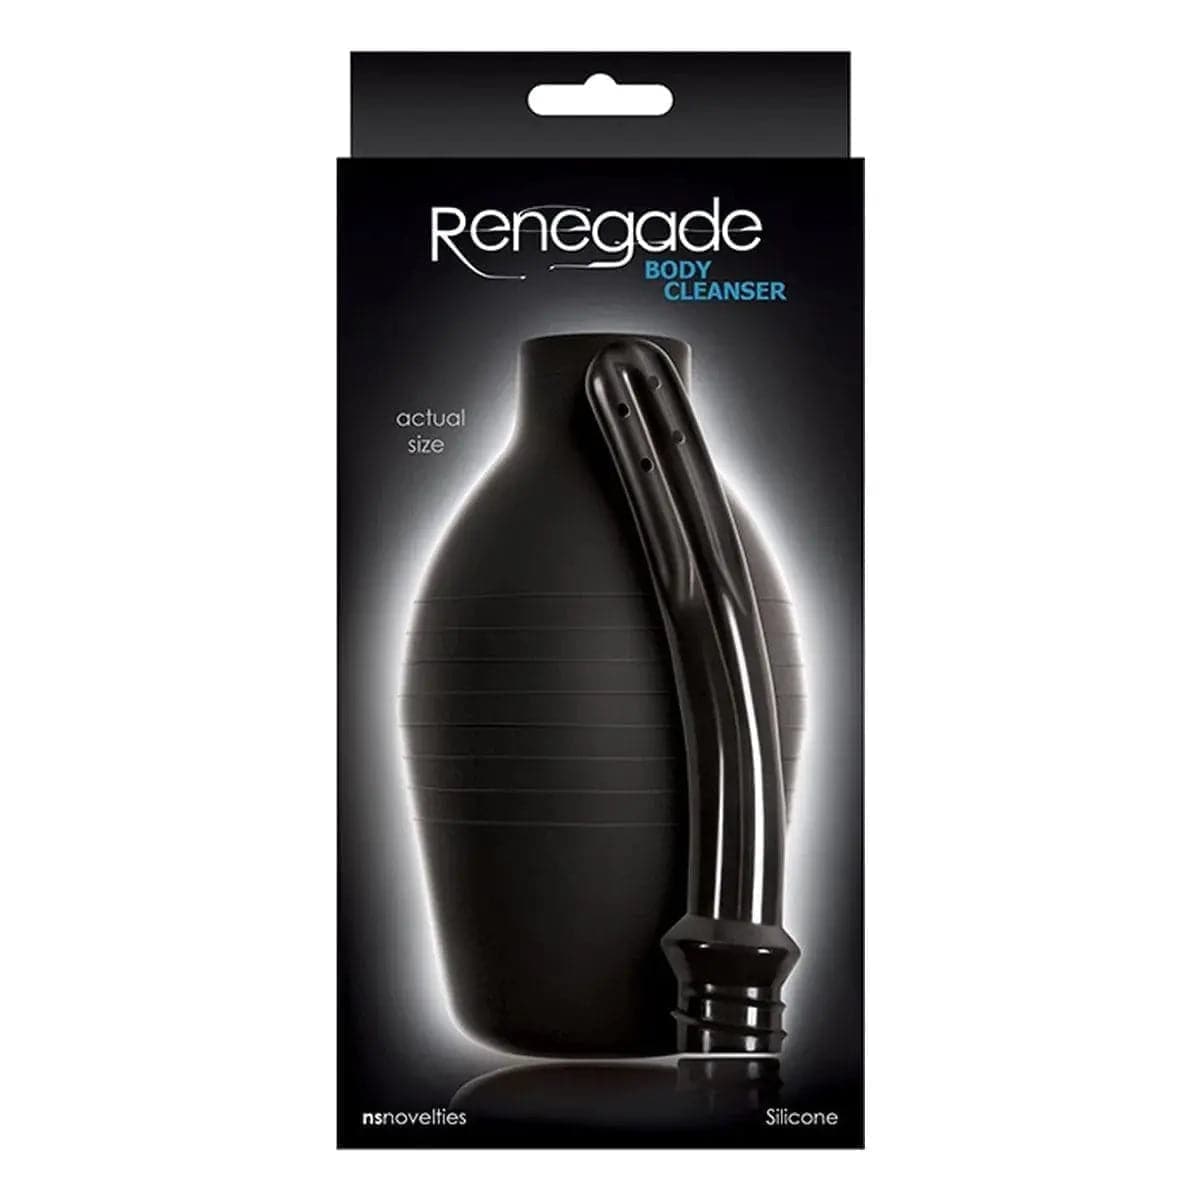 Duche Renegade Cleanser 355ml - Kit de Limpeza Íntima com Aplicador Flexível